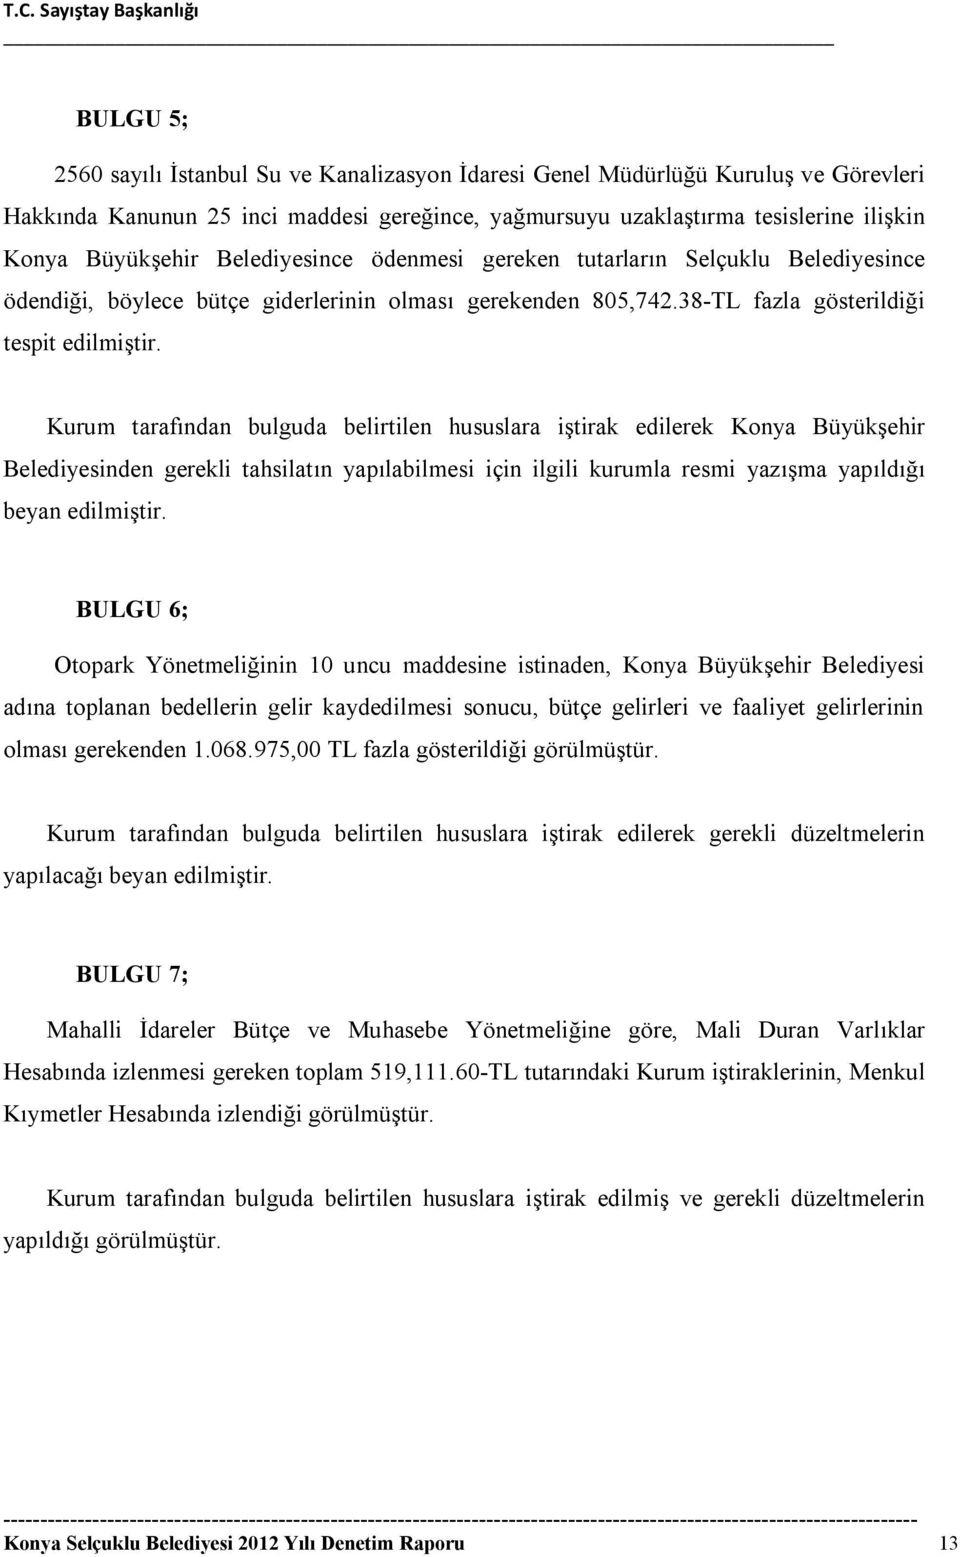 Kurum tarafından bulguda belirtilen hususlara iştirak edilerek Konya Büyükşehir Belediyesinden gerekli tahsilatın yapılabilmesi için ilgili kurumla resmi yazışma yapıldığı beyan edilmiştir.